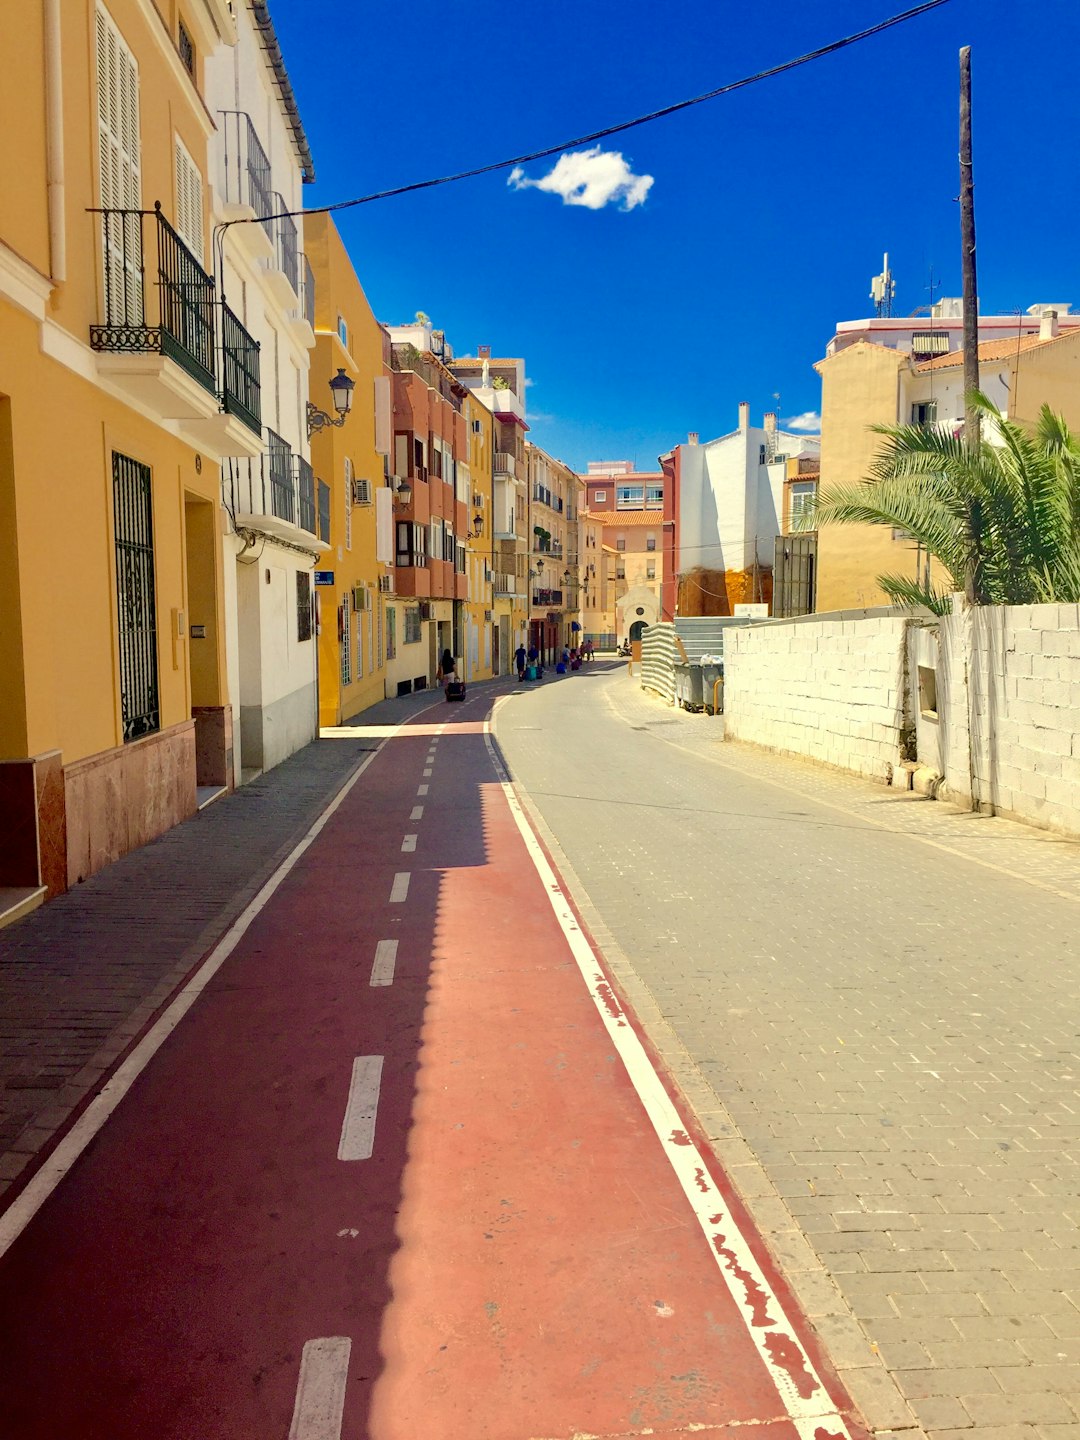 Town photo spot Calle Parras Marbella, Málaga